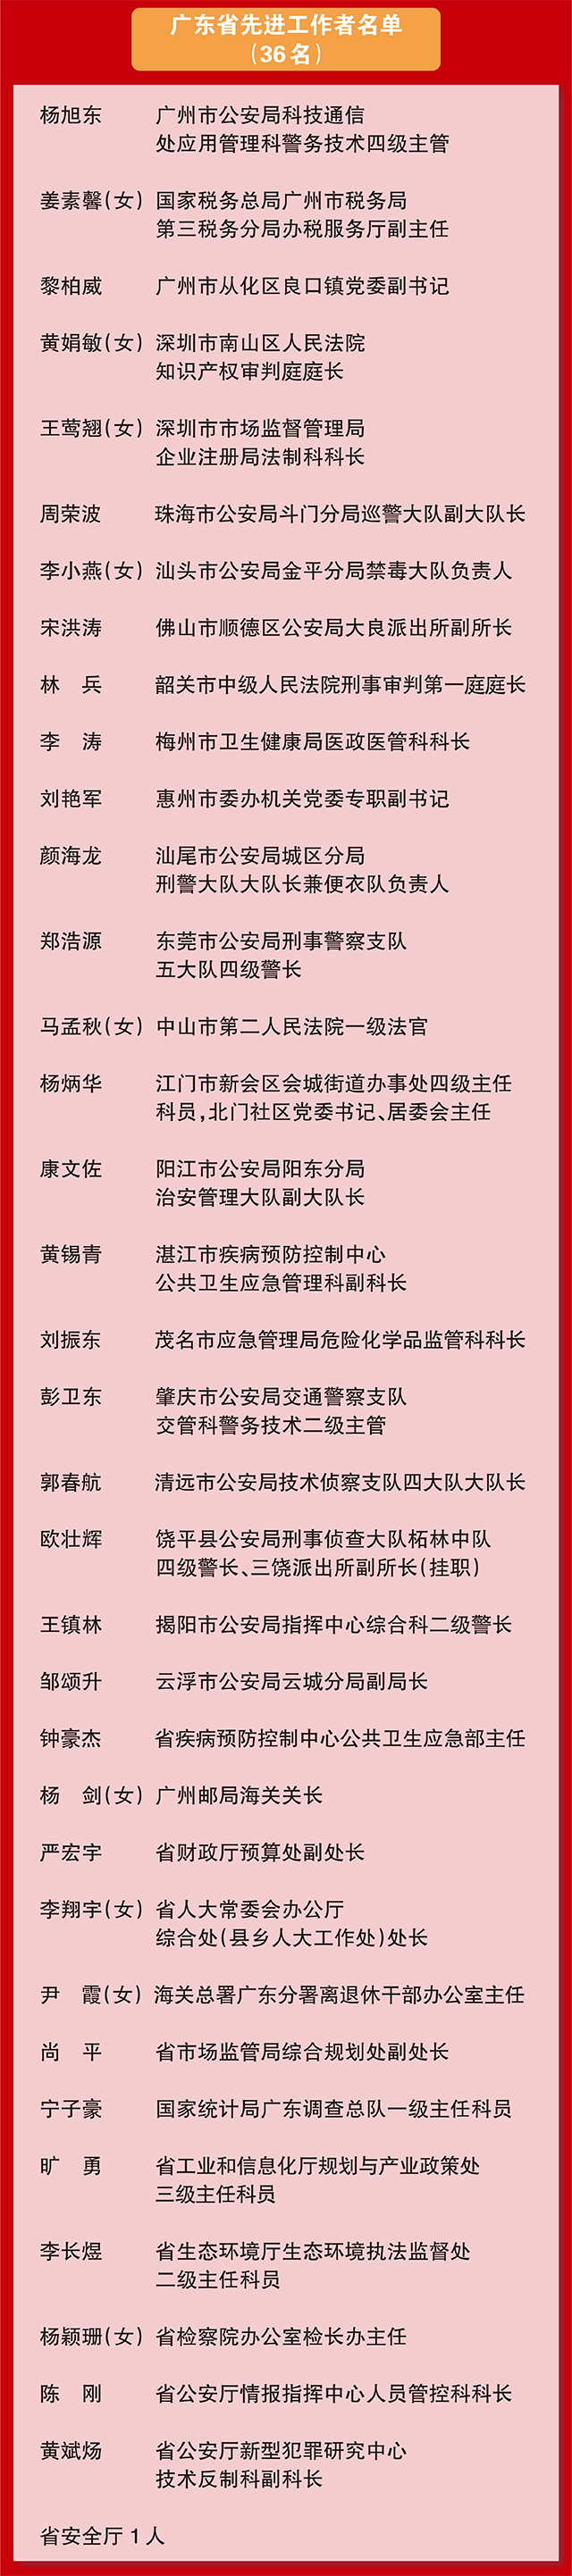 广东省劳动模范名单--05.jpg